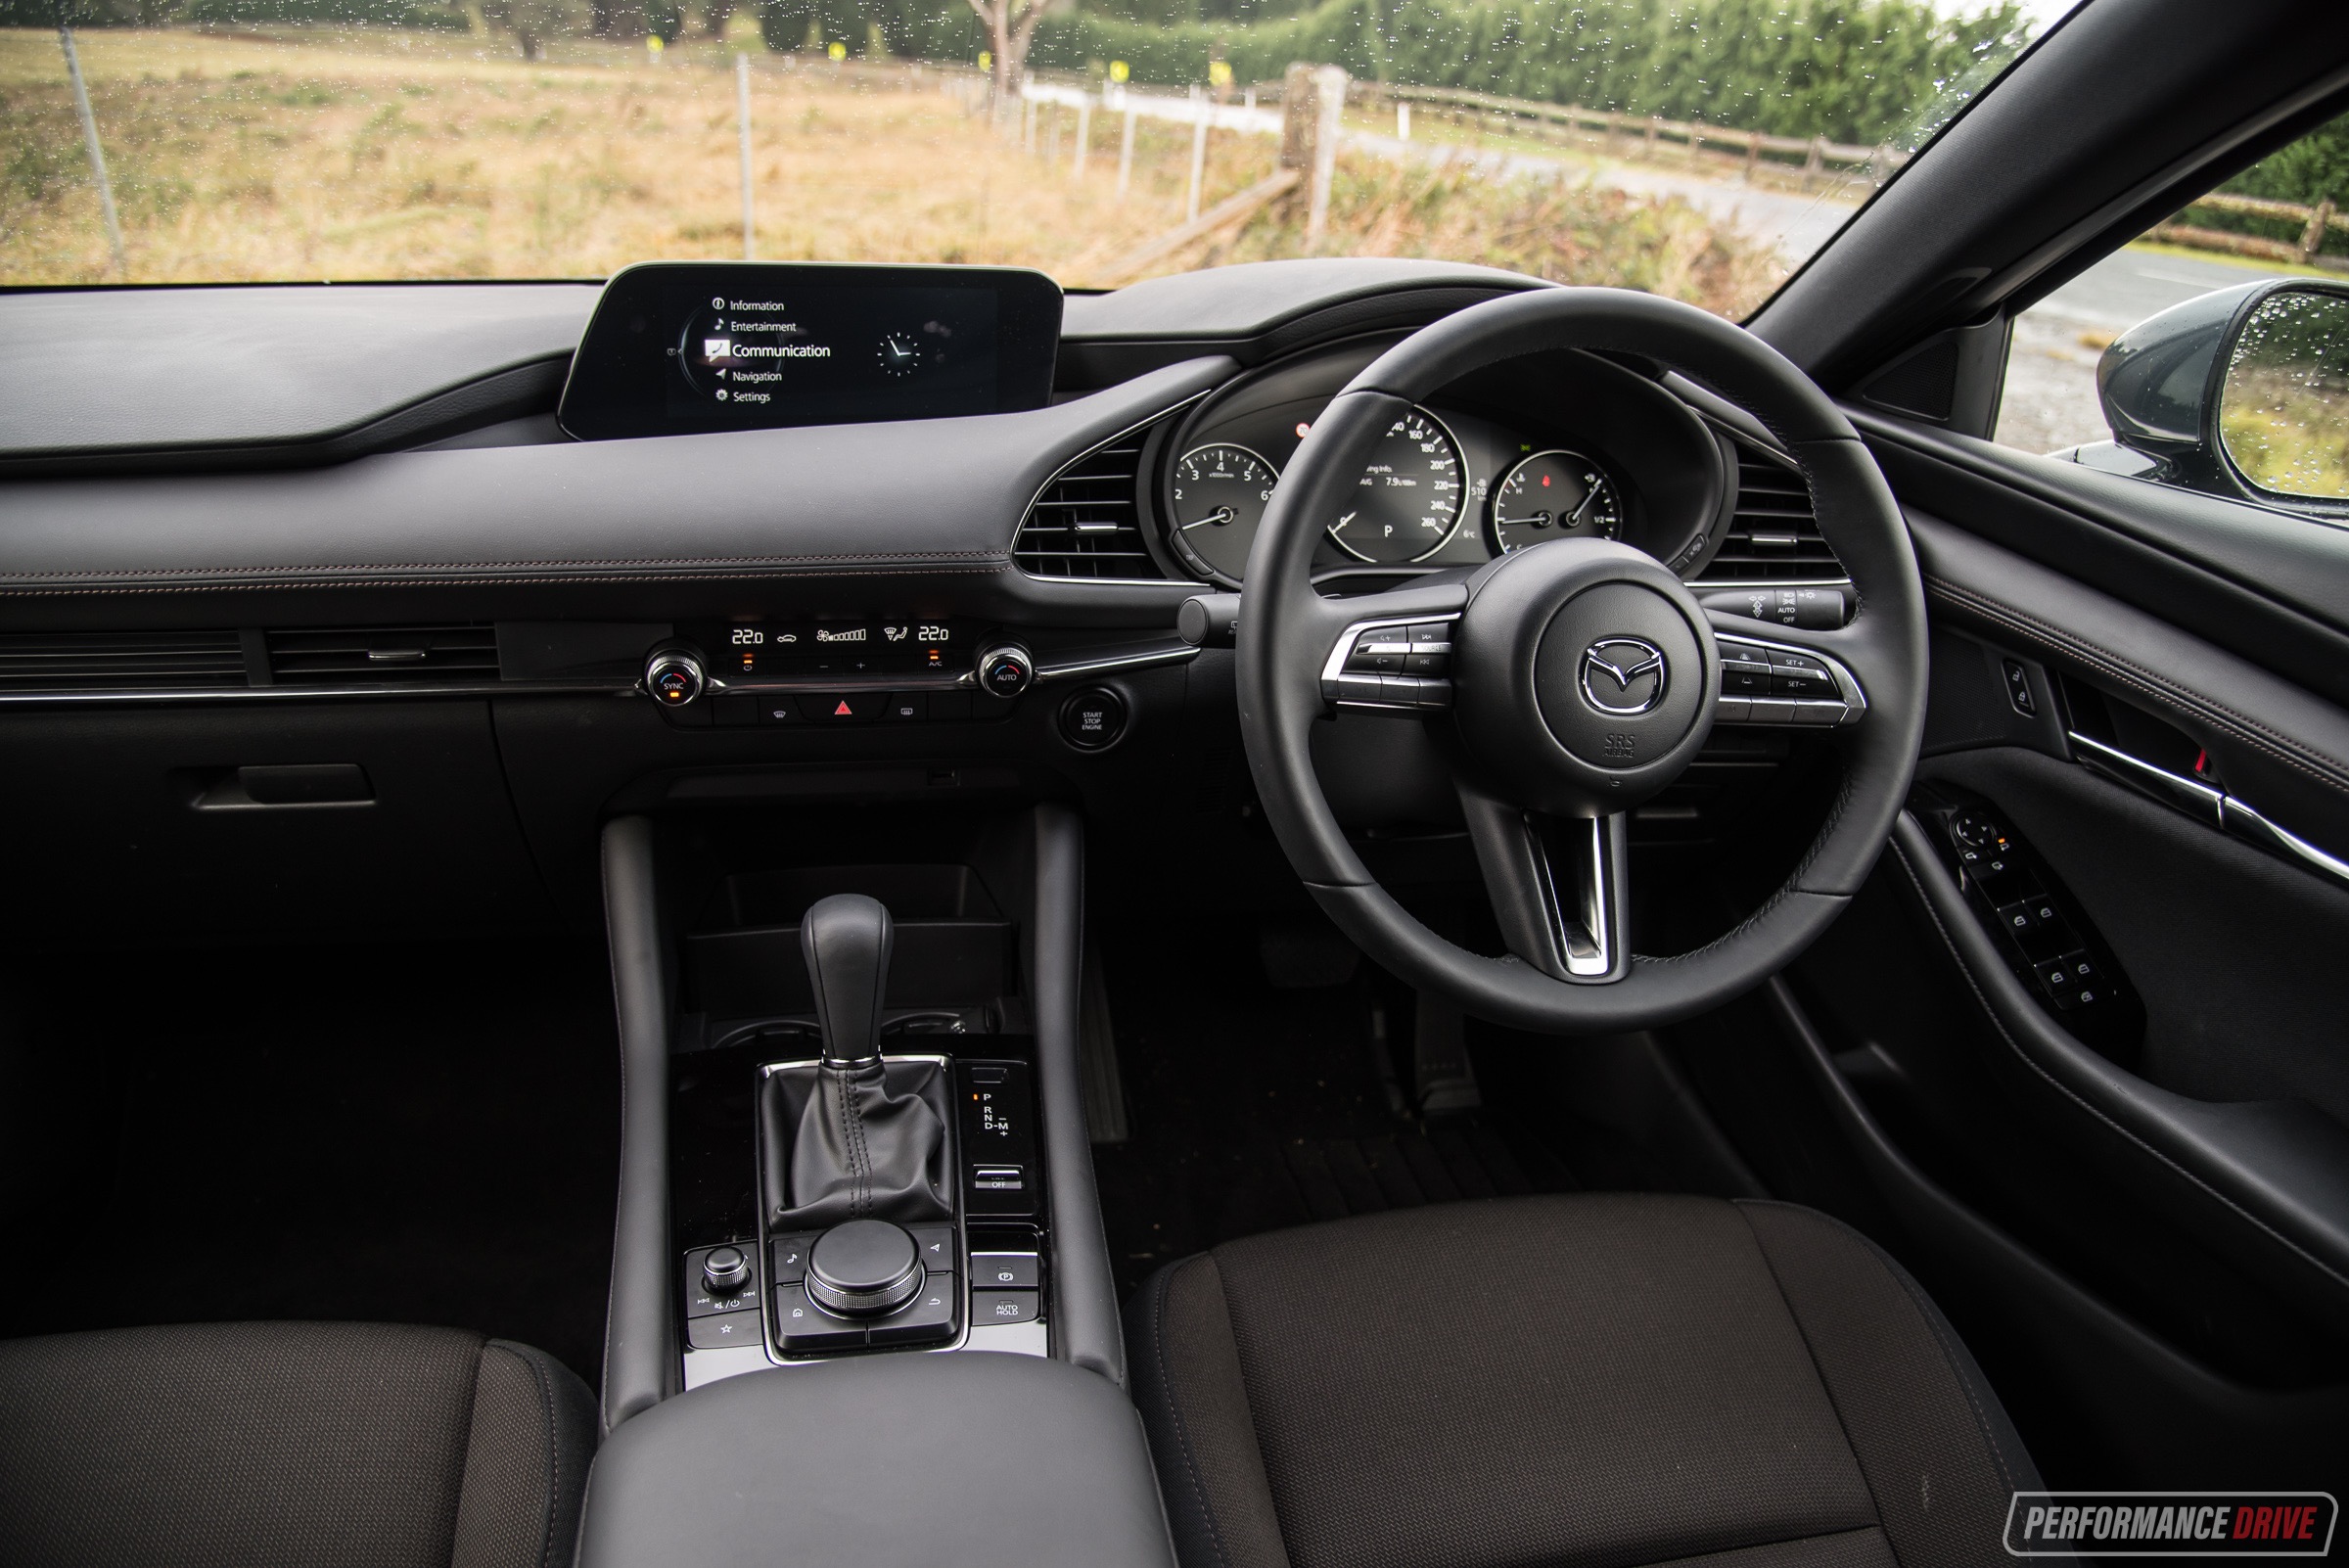 2019 Mazda3 Evolve G20 Review Video Performancedrive